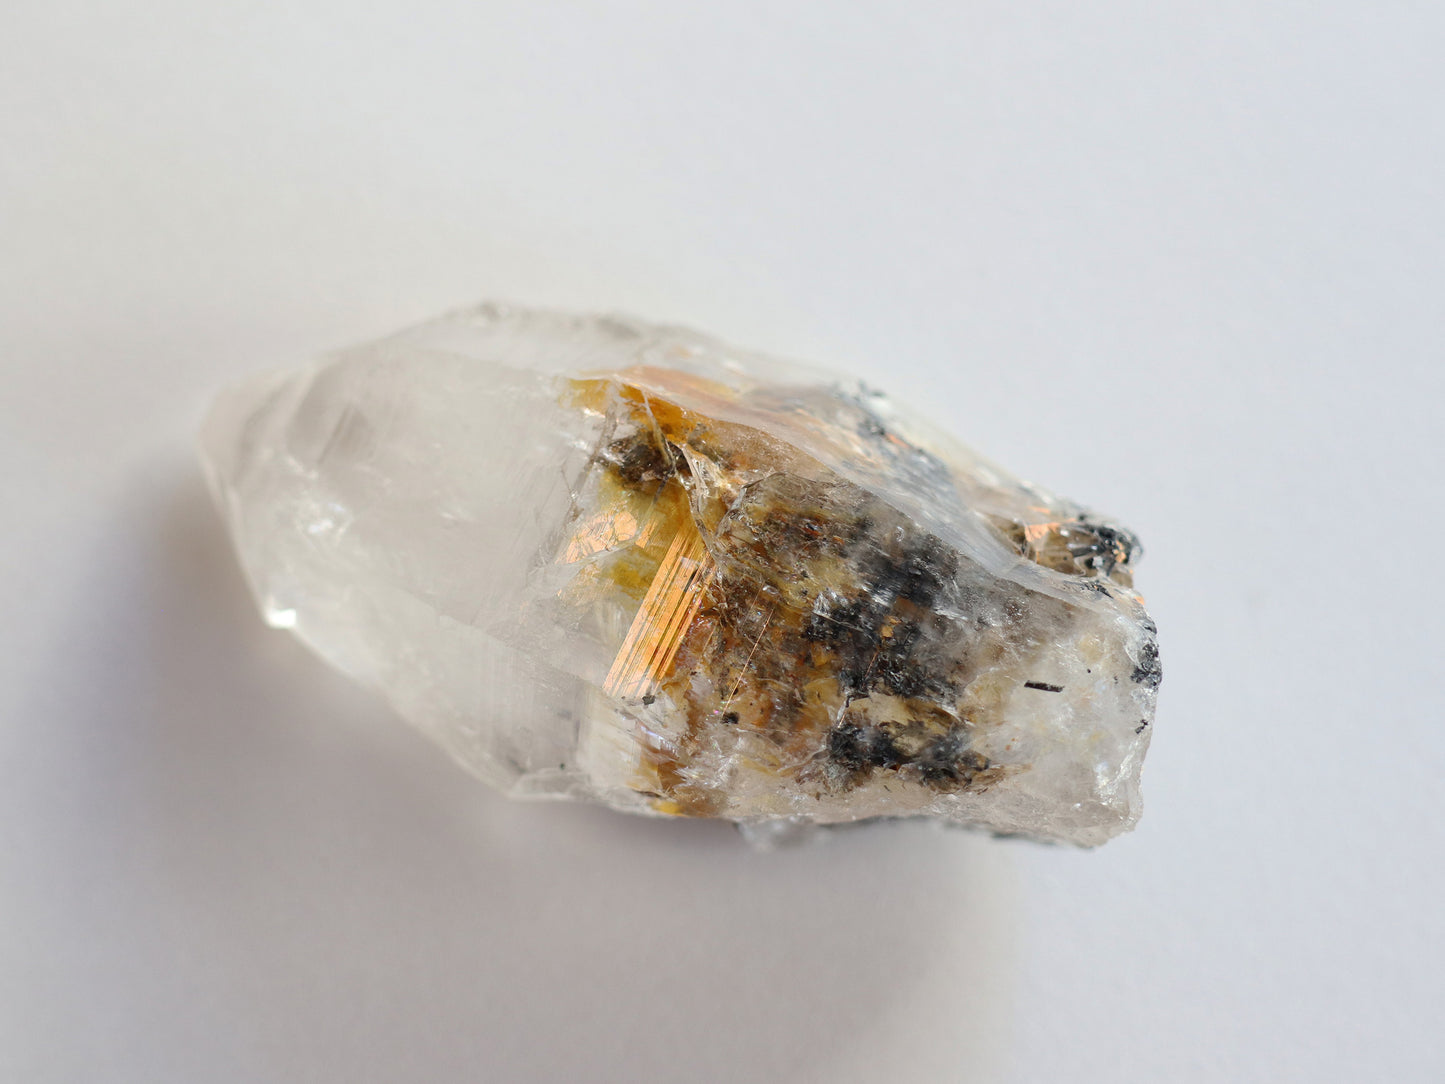 ガネーシュヒマール産ヒマラヤ水晶セプター、トルマリンルチル原石PN:GG-164